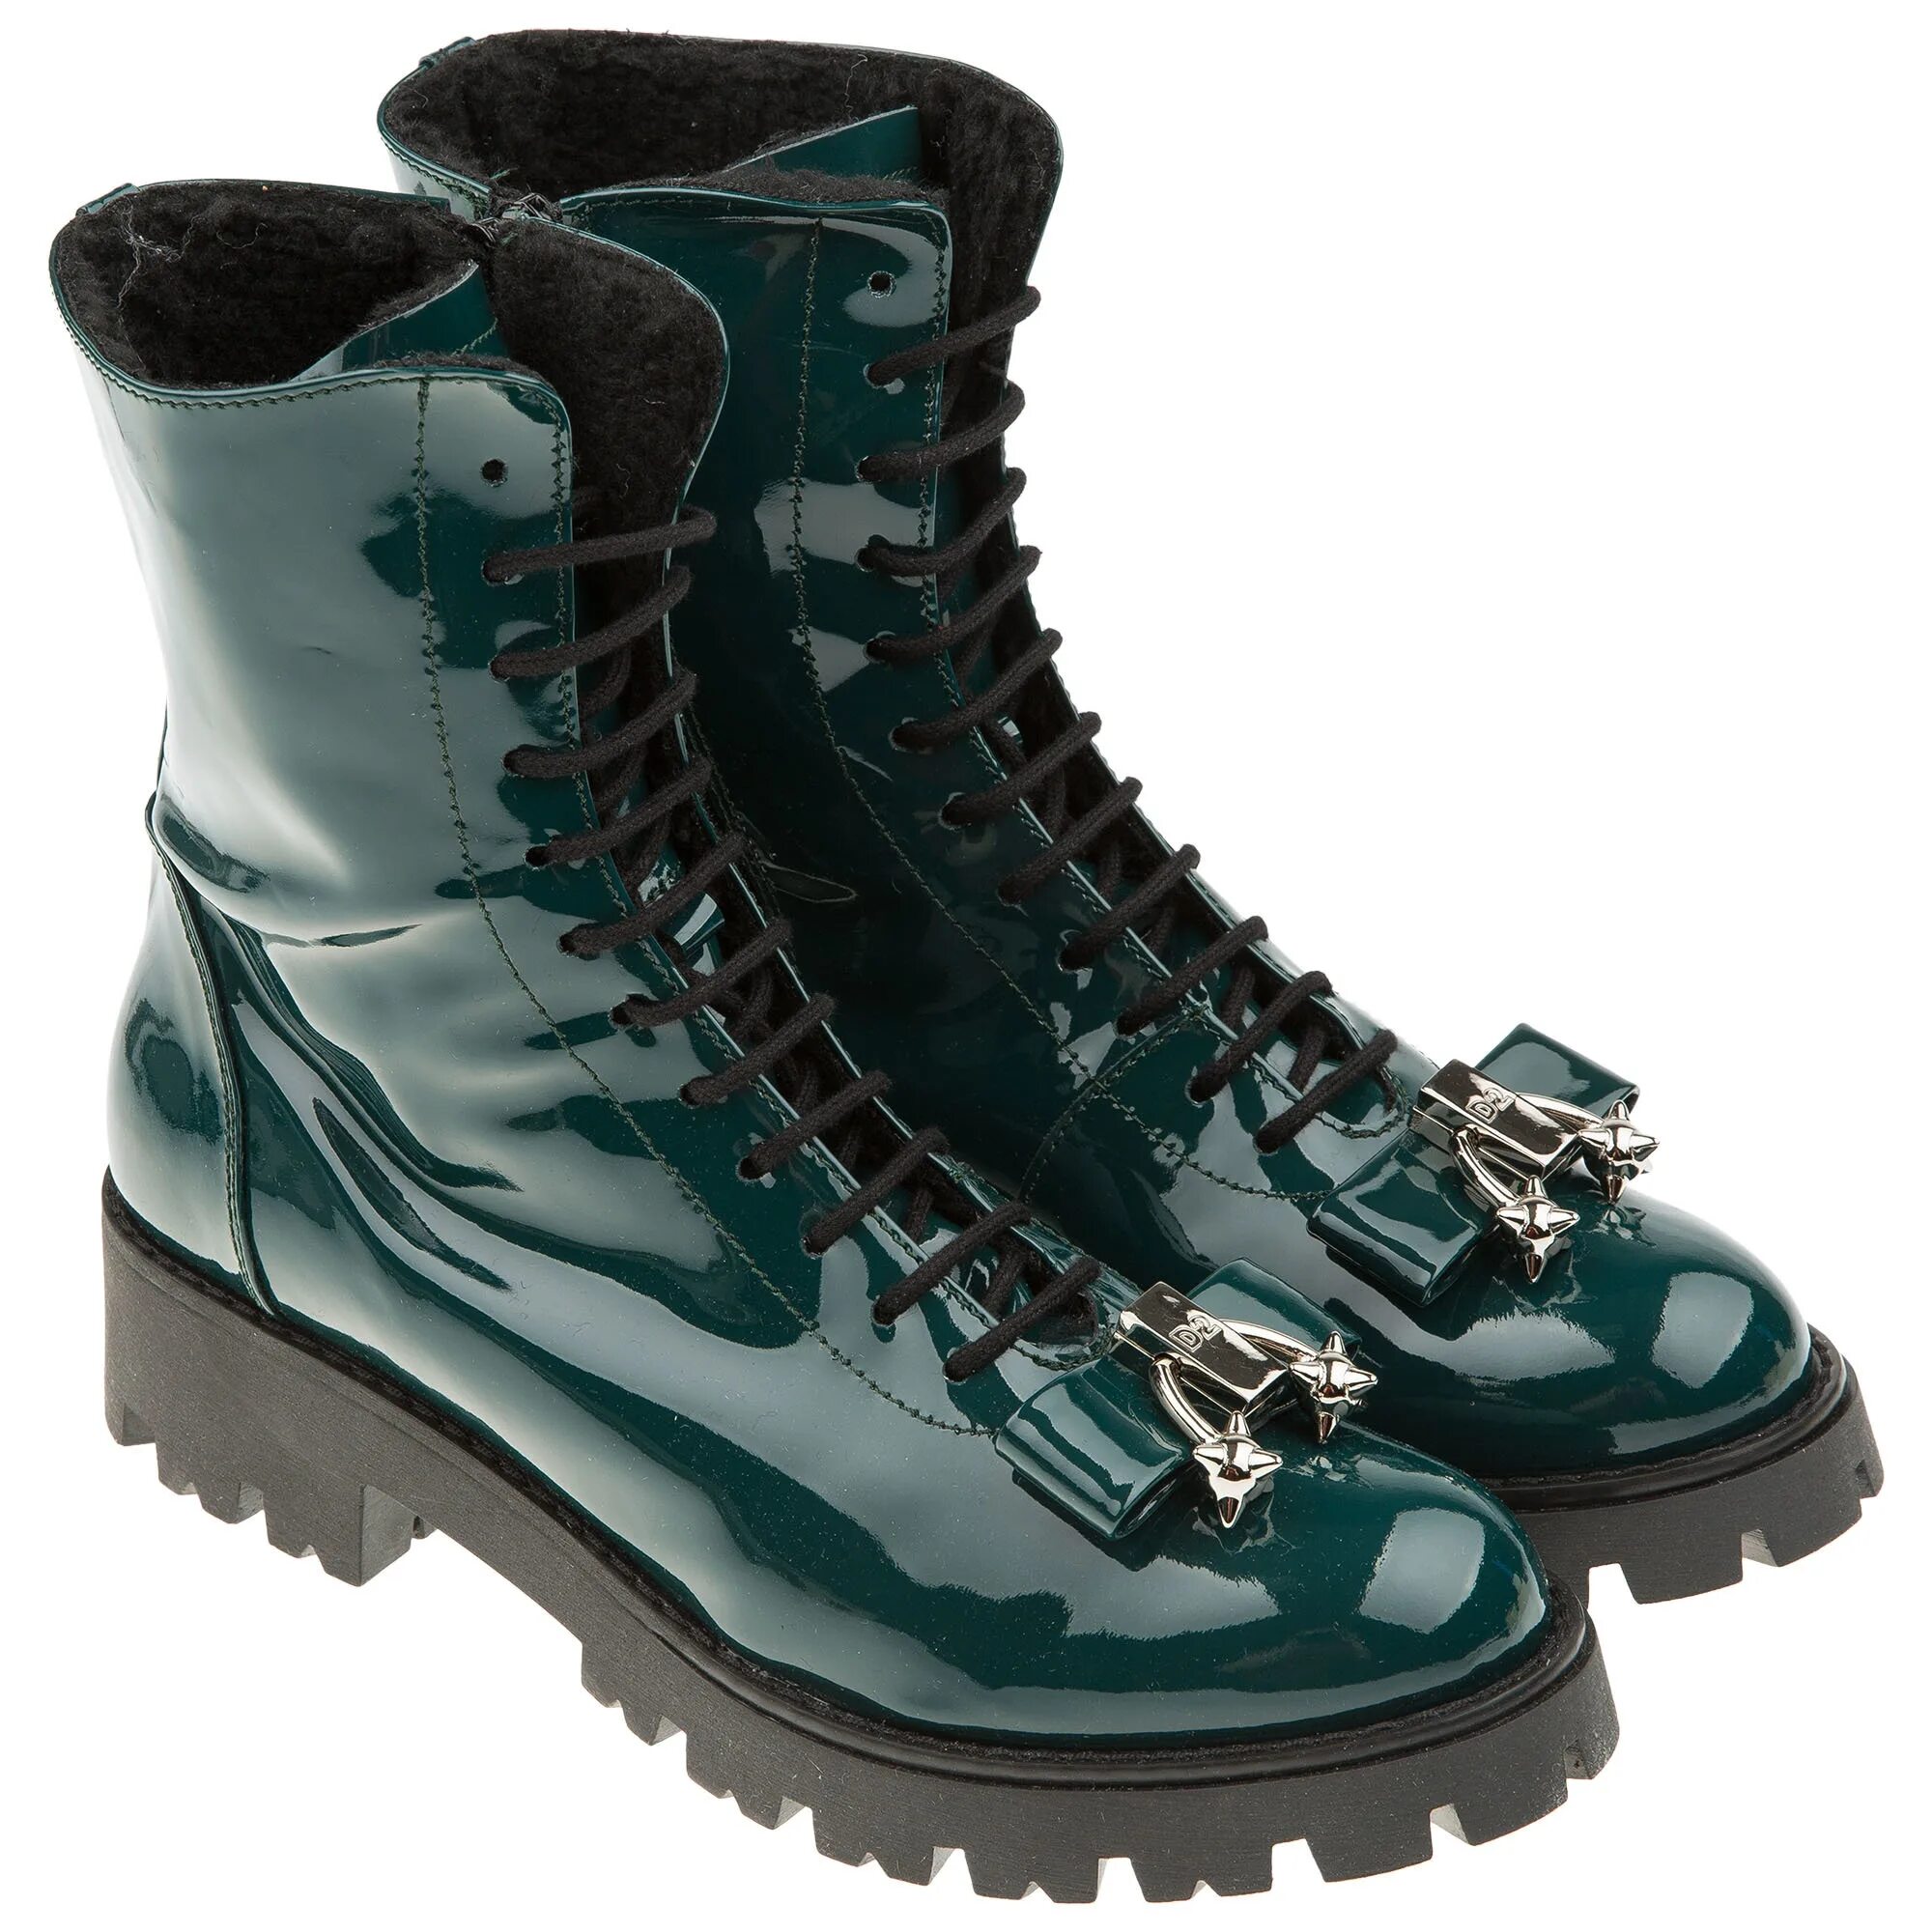 Обувь green. Aflex обувь зеленые ботинки. Ботинки dsquared2. Ботинки зелёные midina. Ботинки Spur женские зимние зеленые.